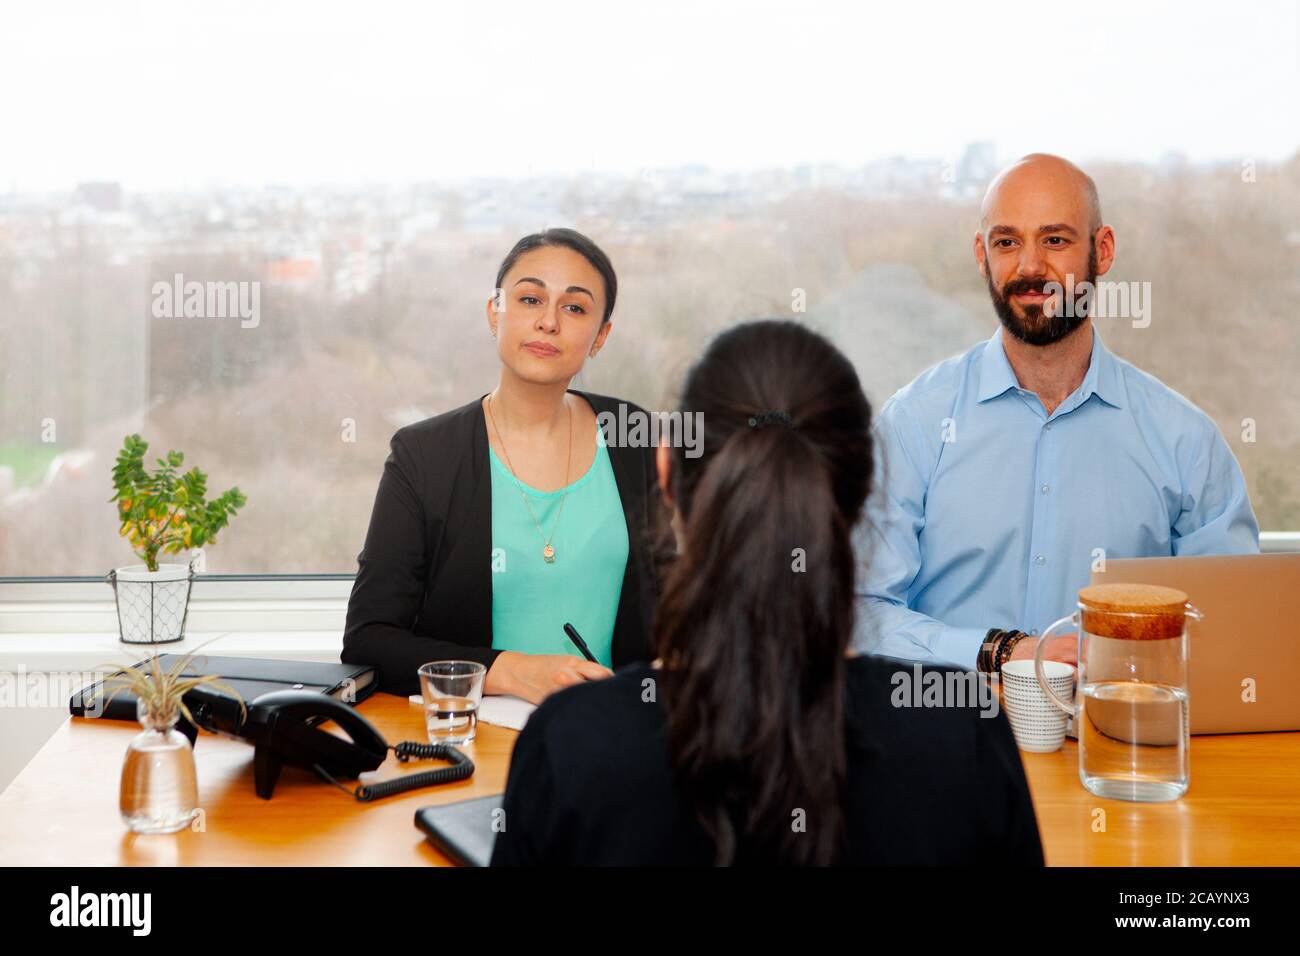 Bewerbungsgespräch im Büro einer Bewerberin - Rekrutierer, die Fragen stellen und mit dem Kandidaten sprechen Stockfoto